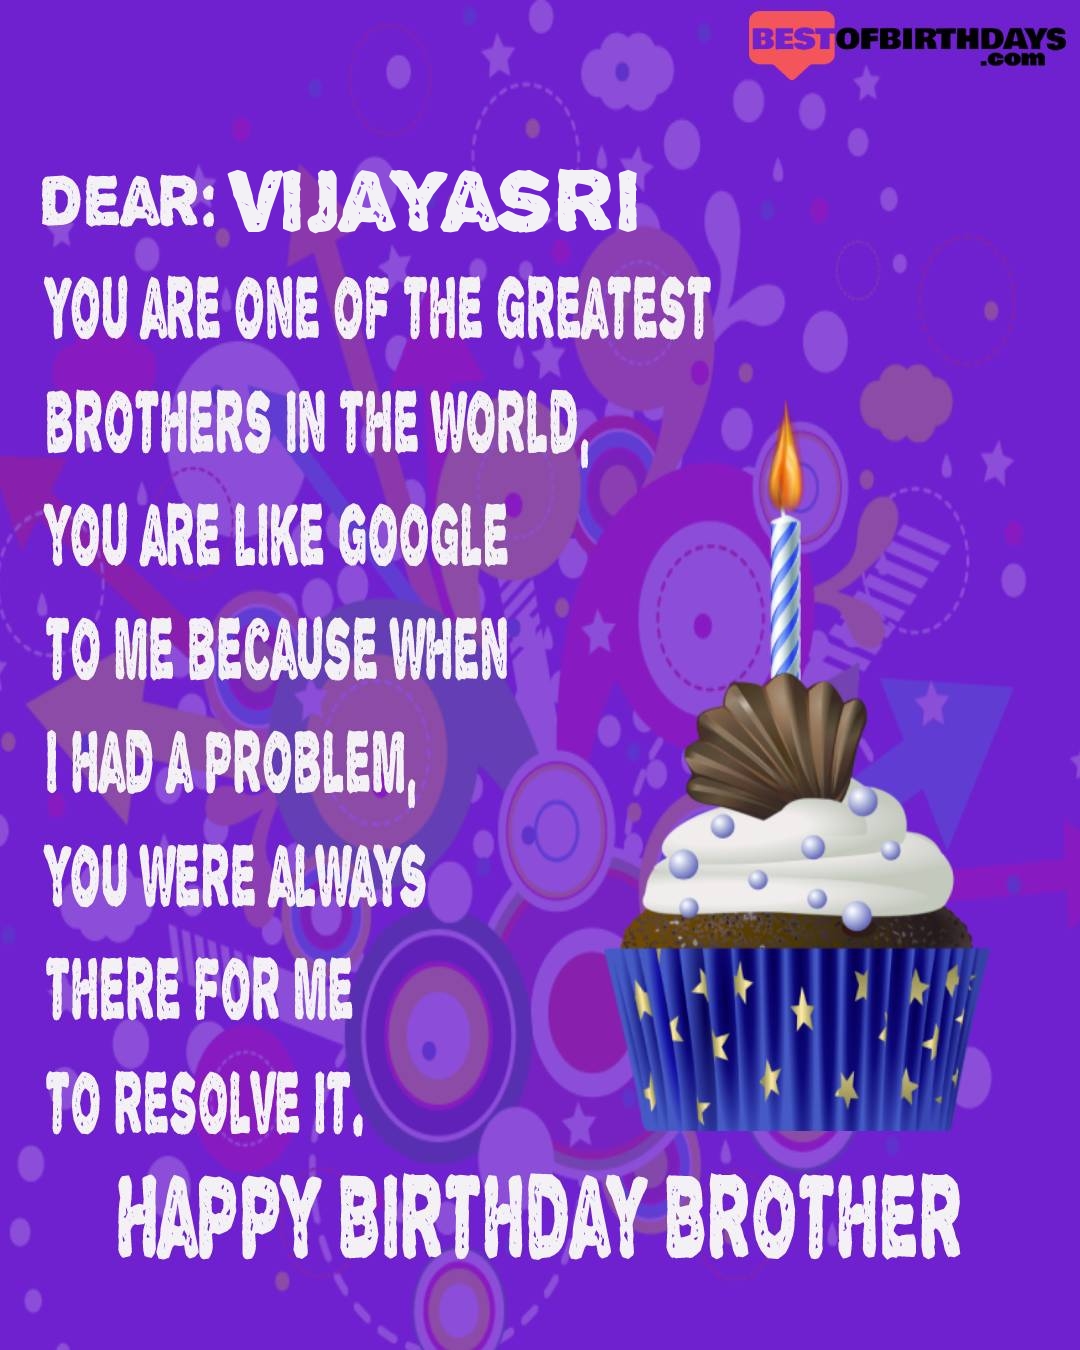 Happy birthday vijayasri bhai brother bro